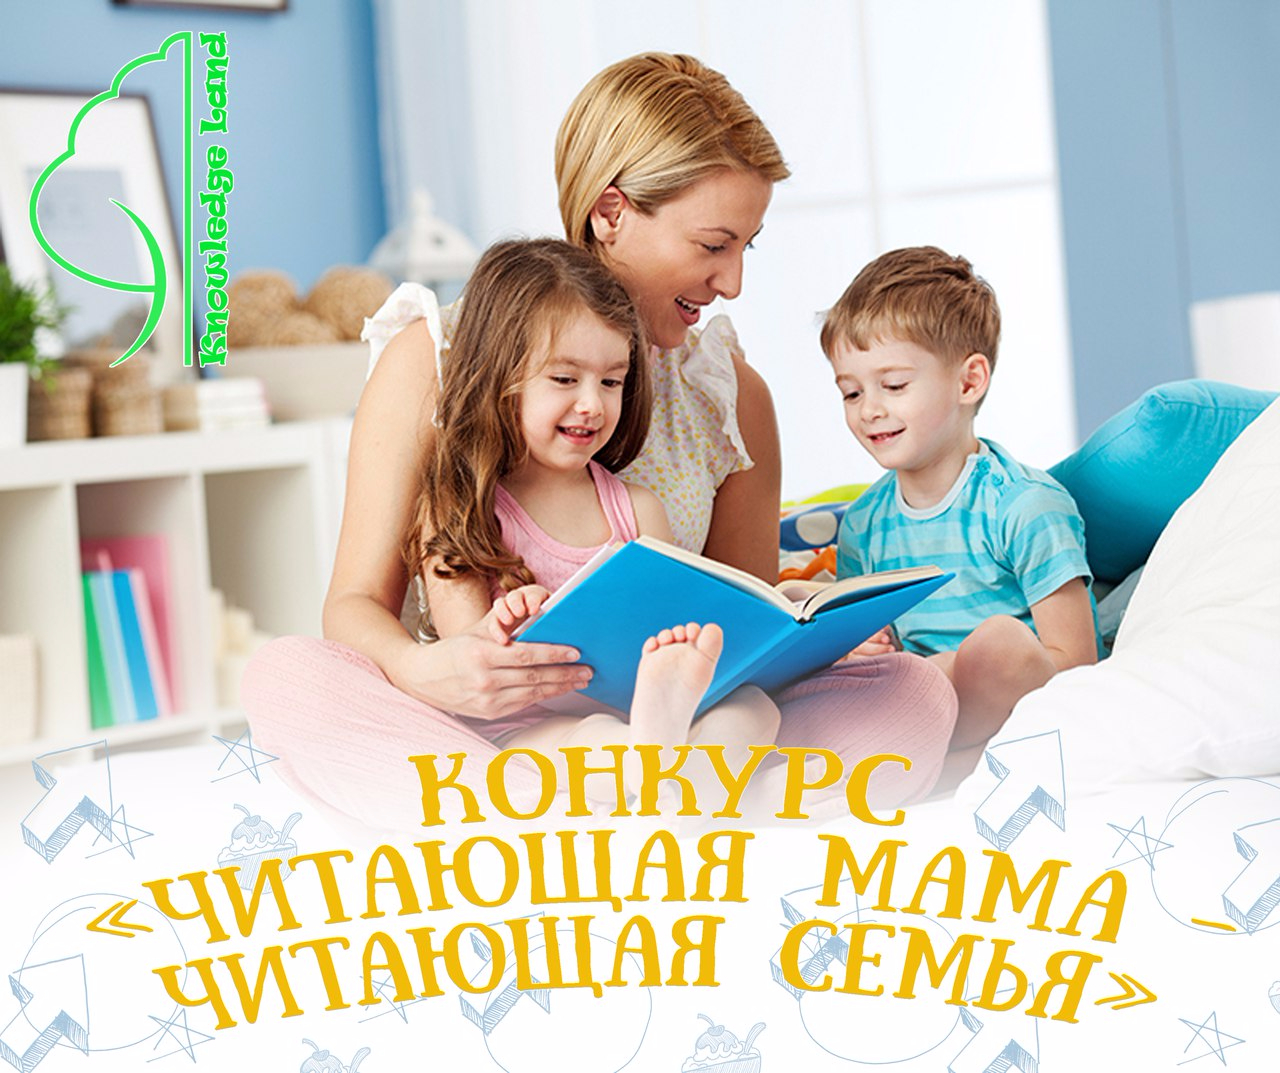 Читаю я и весь край. Читающая семья. Чтение книг семьей. Читаем с мамой. Читающая семья конкурс.